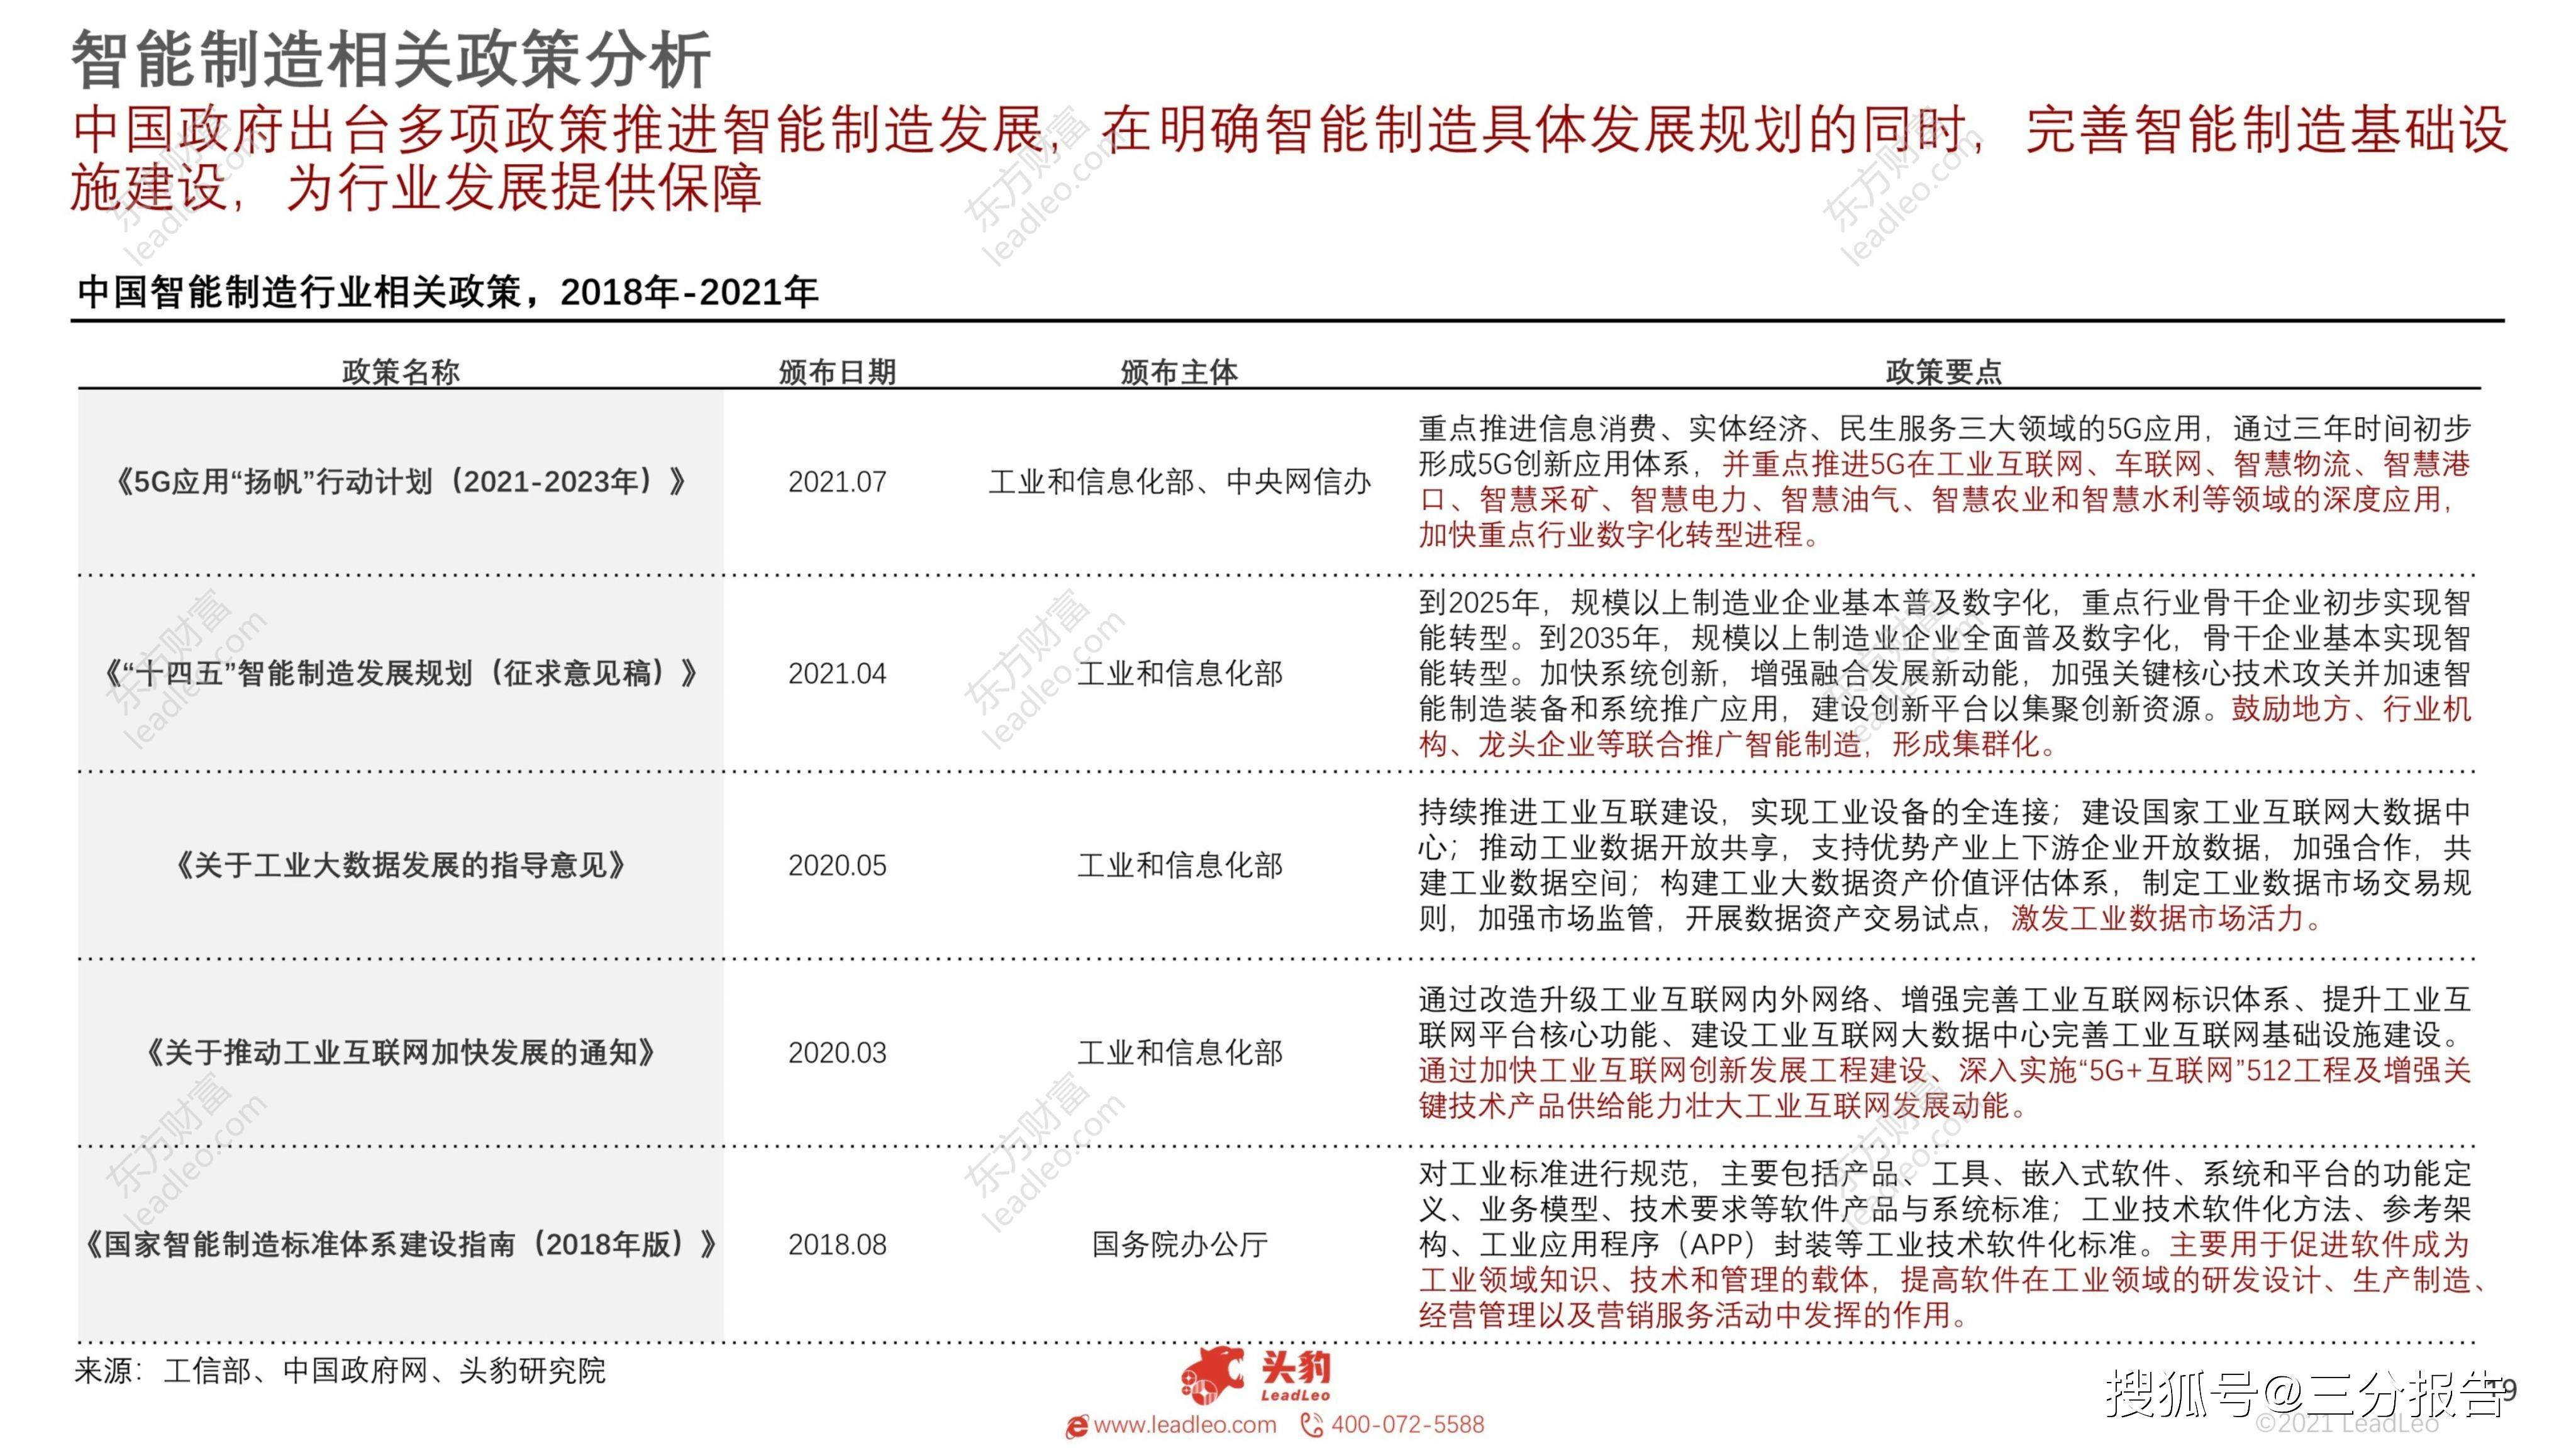 2021年中国智能制造行业产业链研究报告 34页